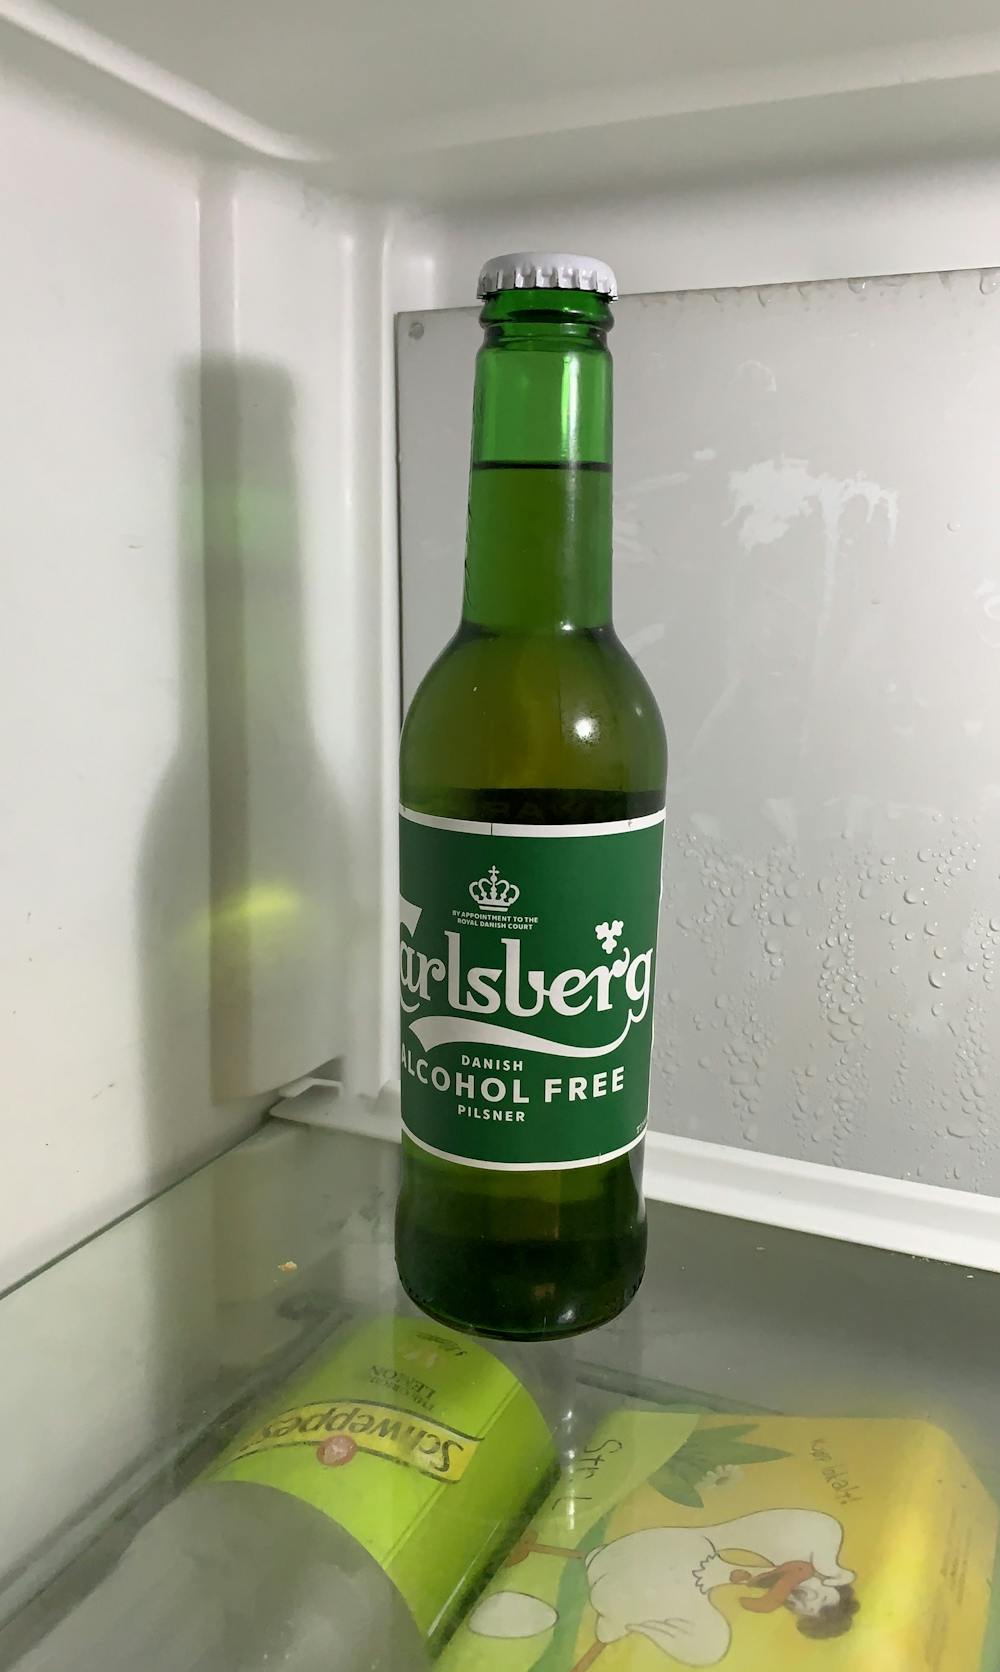 Carlsberg alcohol free, Carlsberg